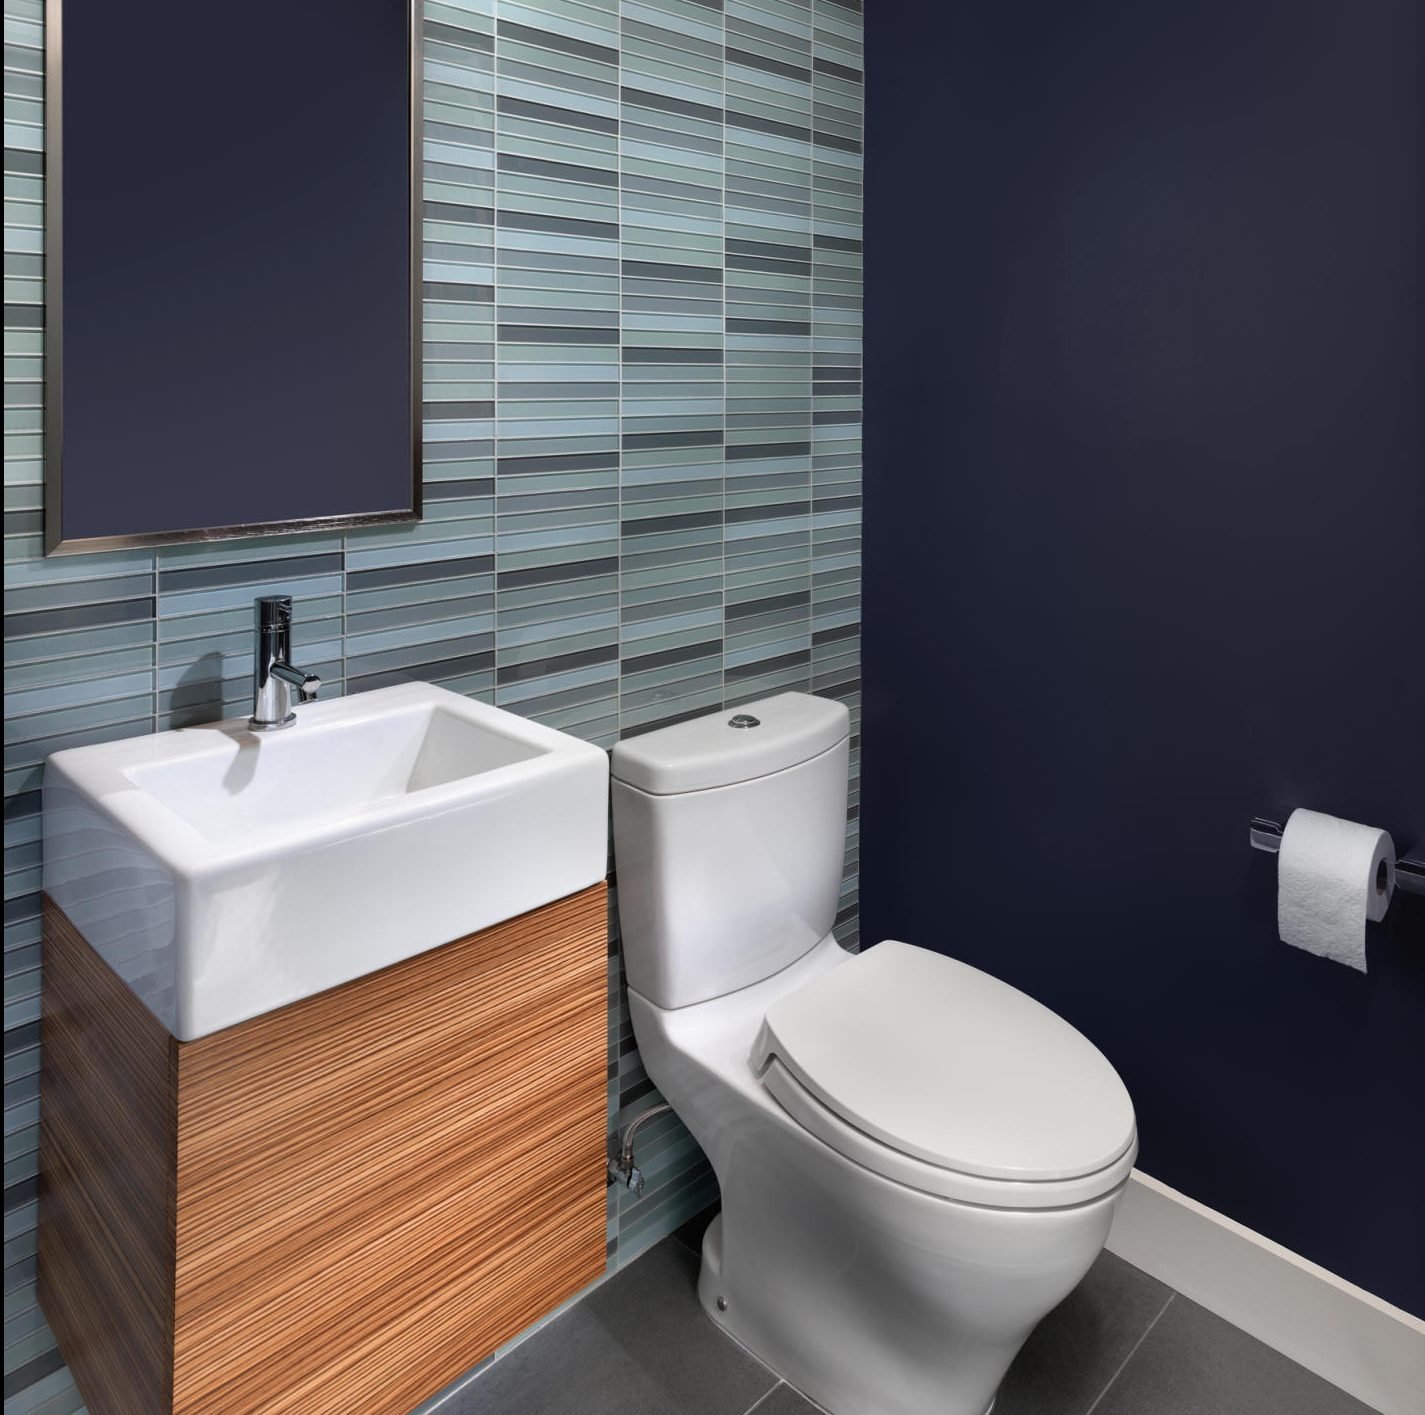 Màu xám và màu xanh trong thiết kế của nhà vệ sinh